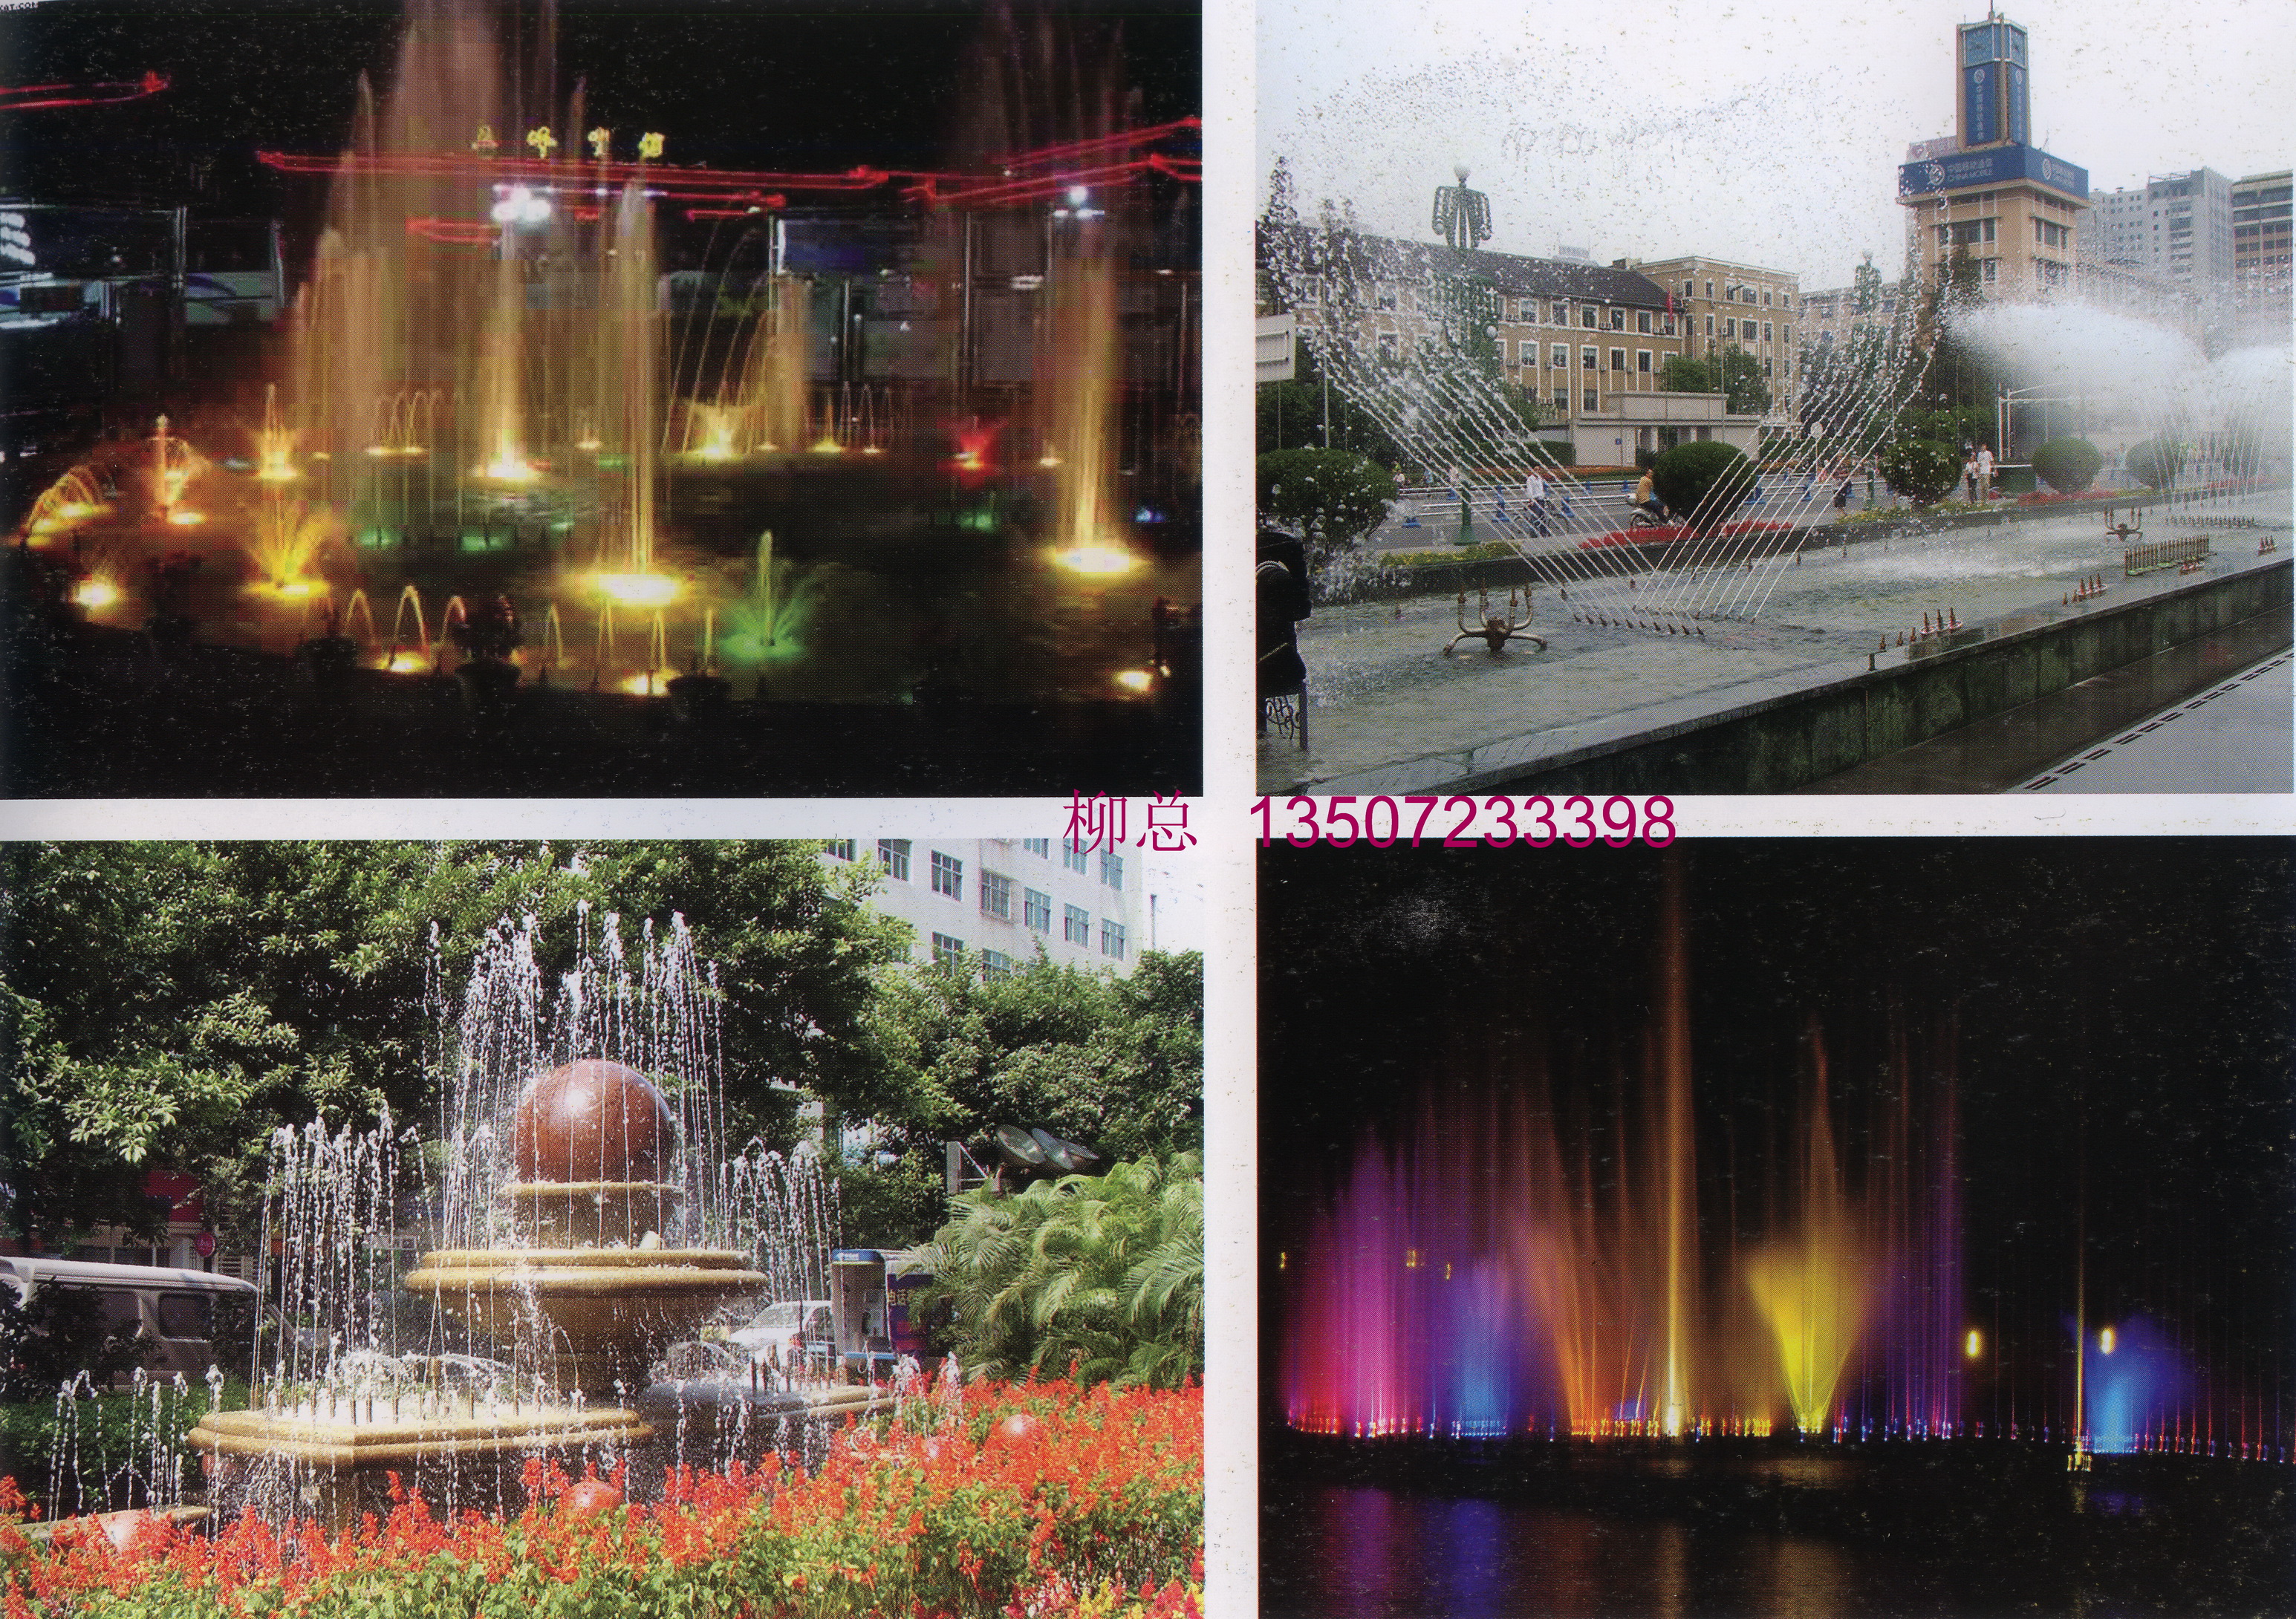 供应喷泉图片，喷泉效果图，喷泉价格，喷泉报价，假山喷泉，喷泉设计图片